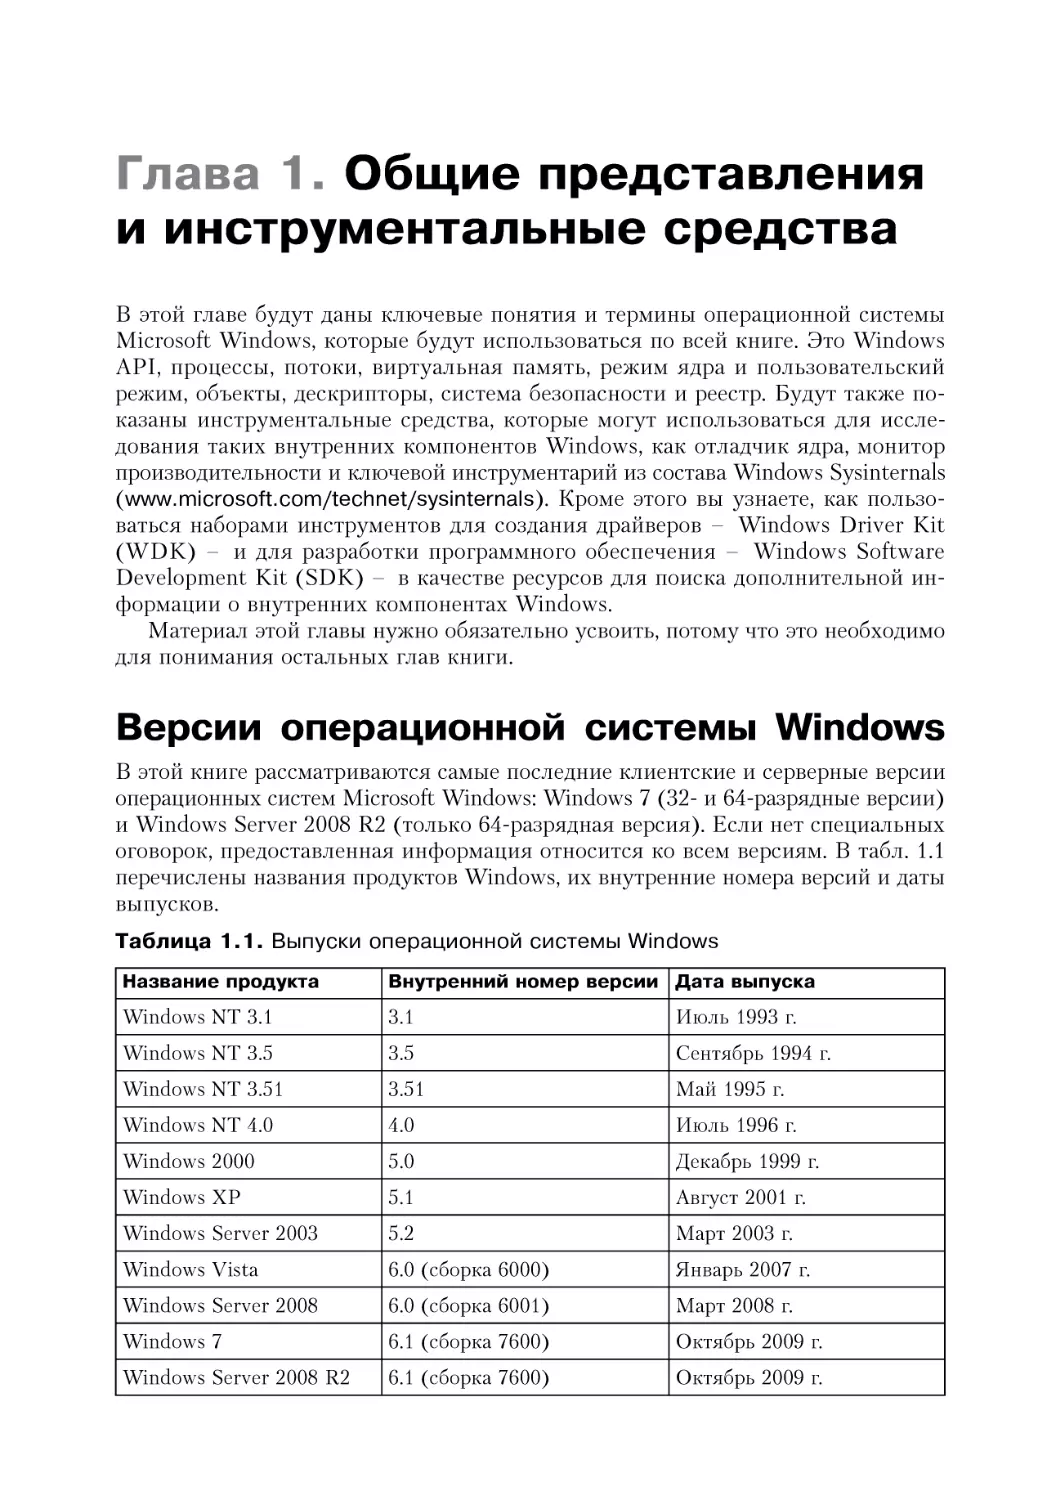 Глава 1. Общие представления и инструментальные средства
Версии операционной системы Windows